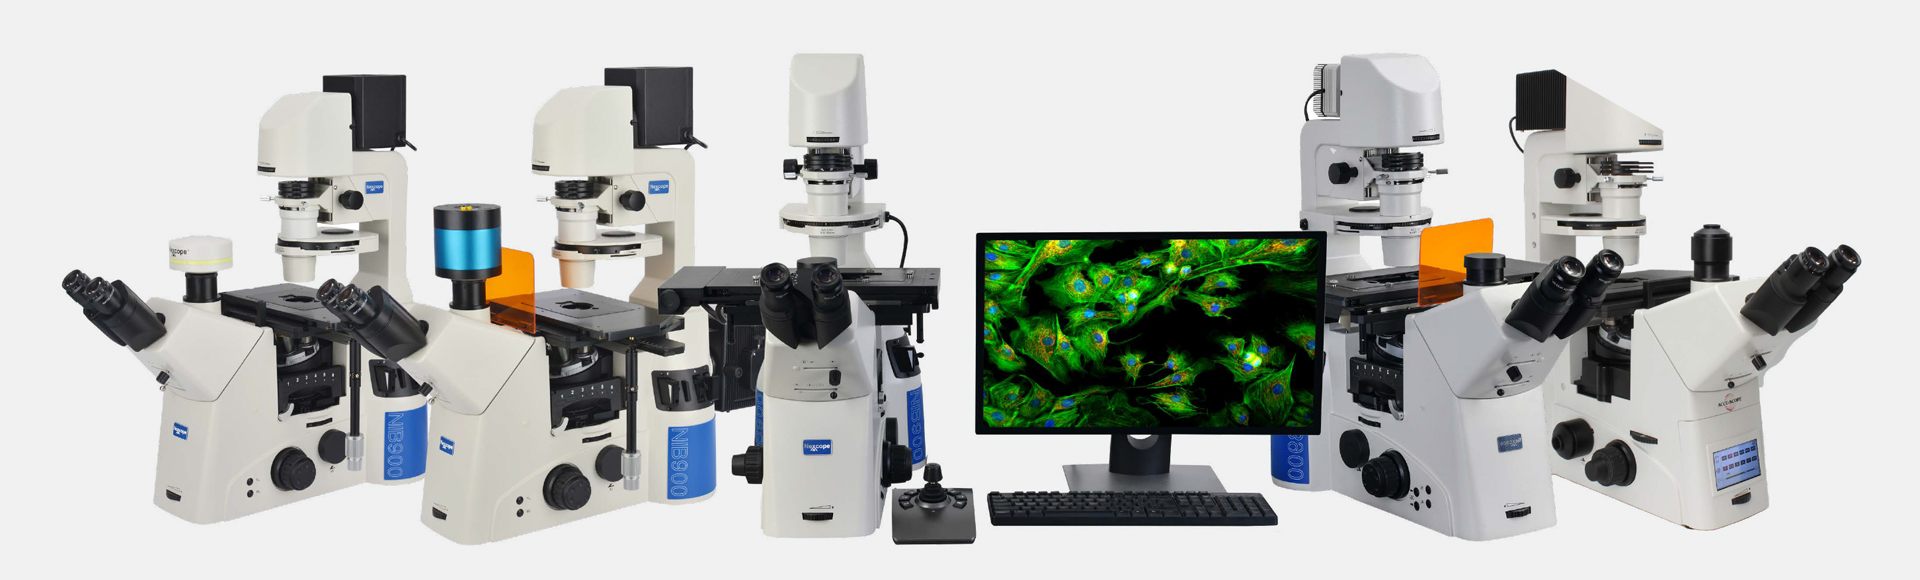 耐可视倒置显微镜倒置荧光显微镜-广州市明慧科技有限公司